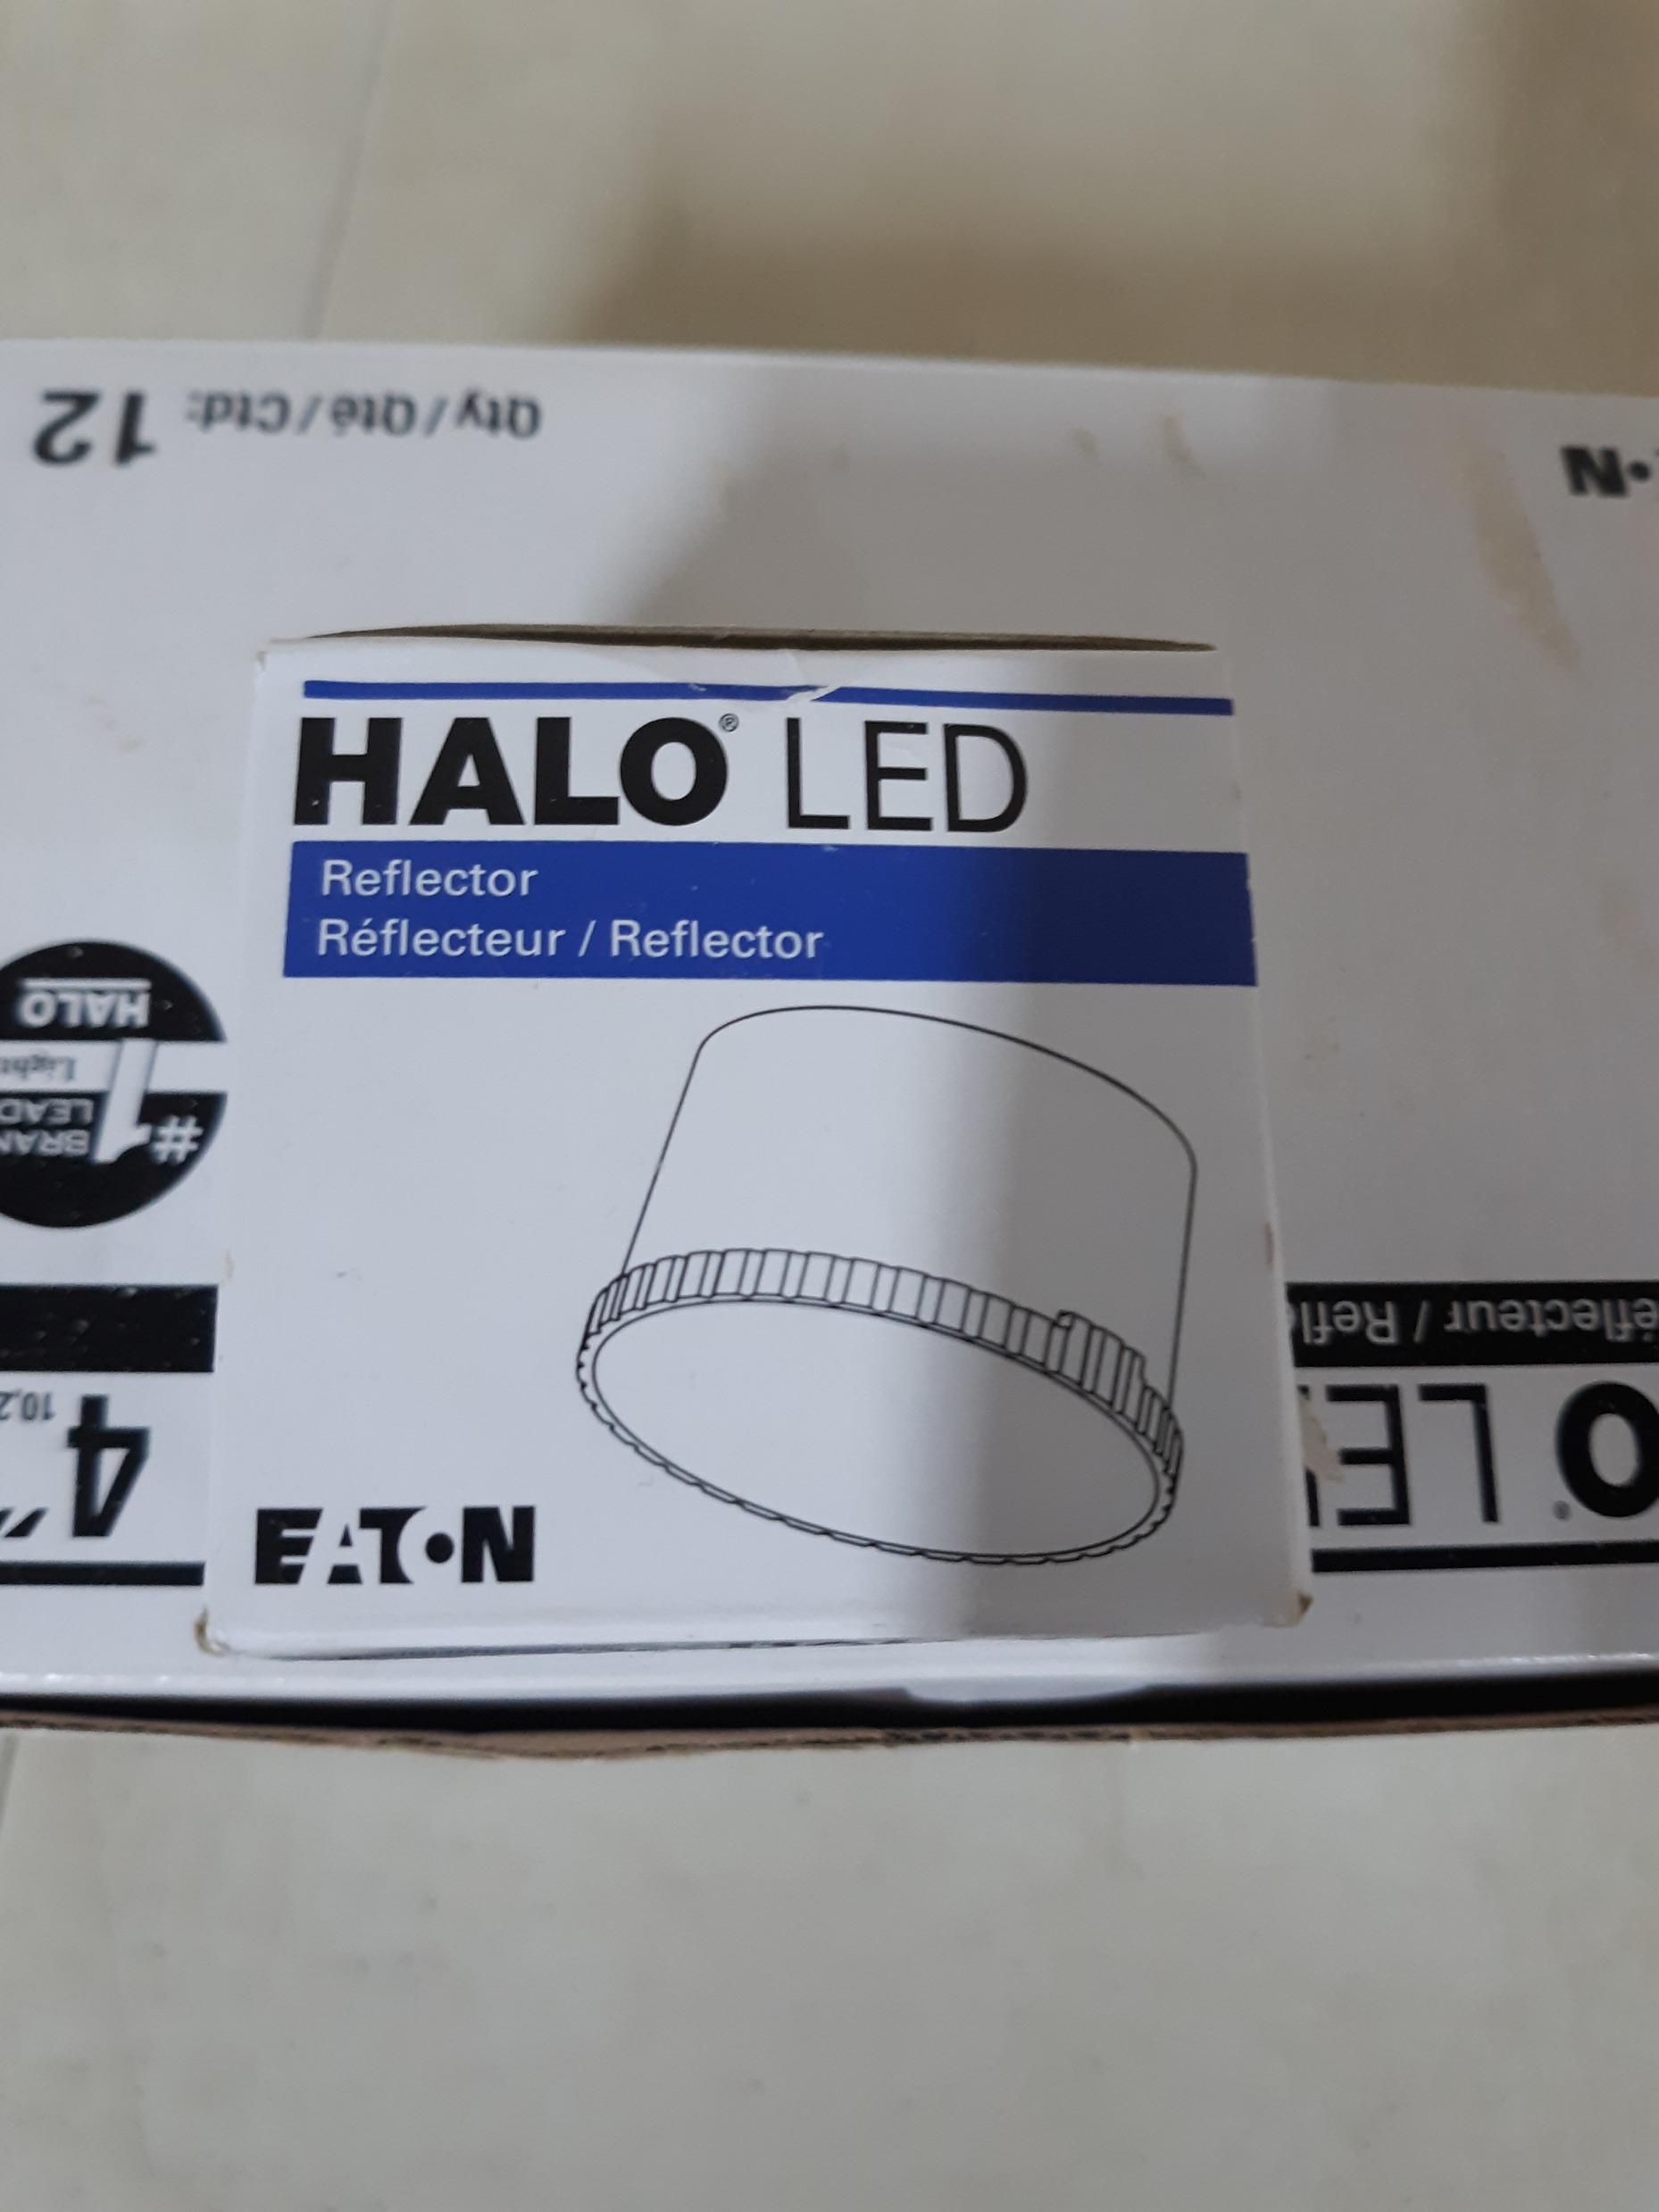 HALO LED Reflector